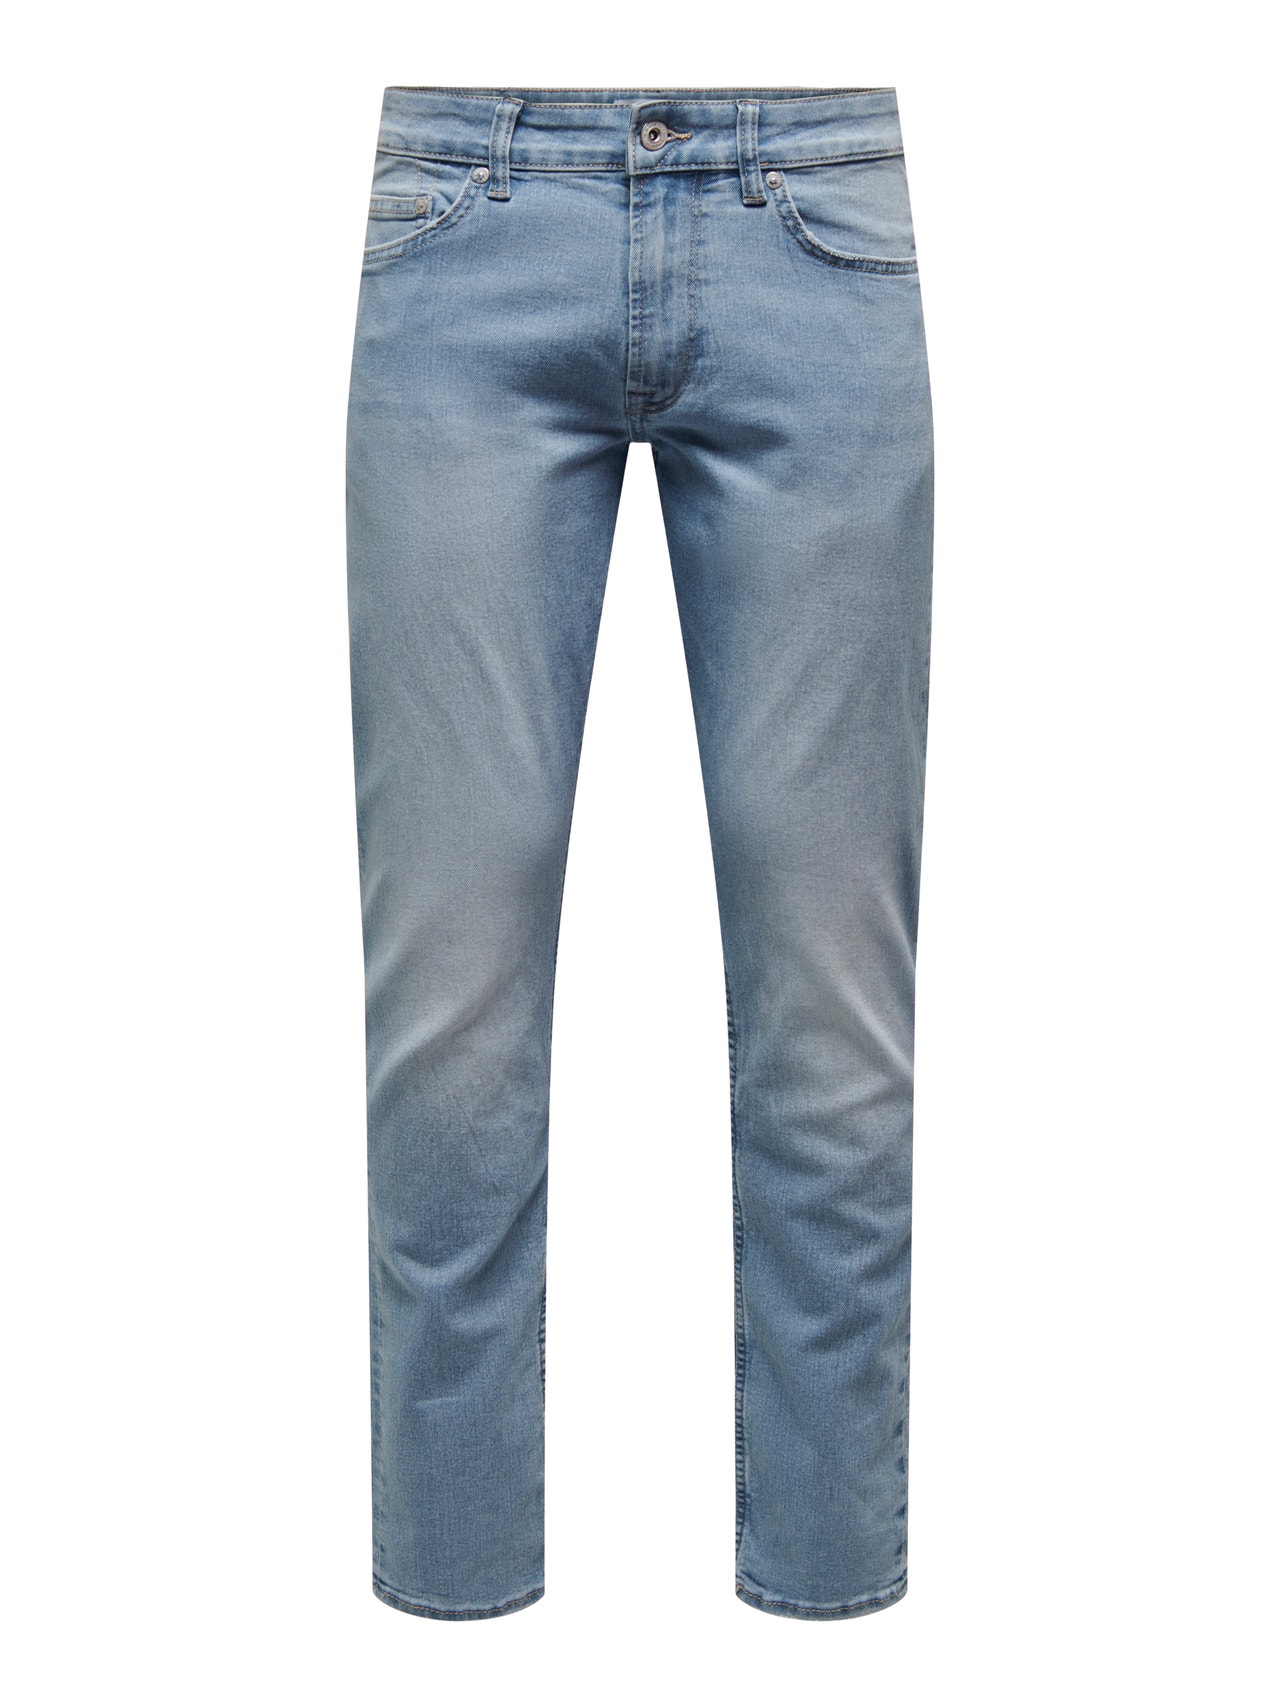 ONLY & SONS Jeans Slim Fit Taille classique -Light Blue Denim - 22024326